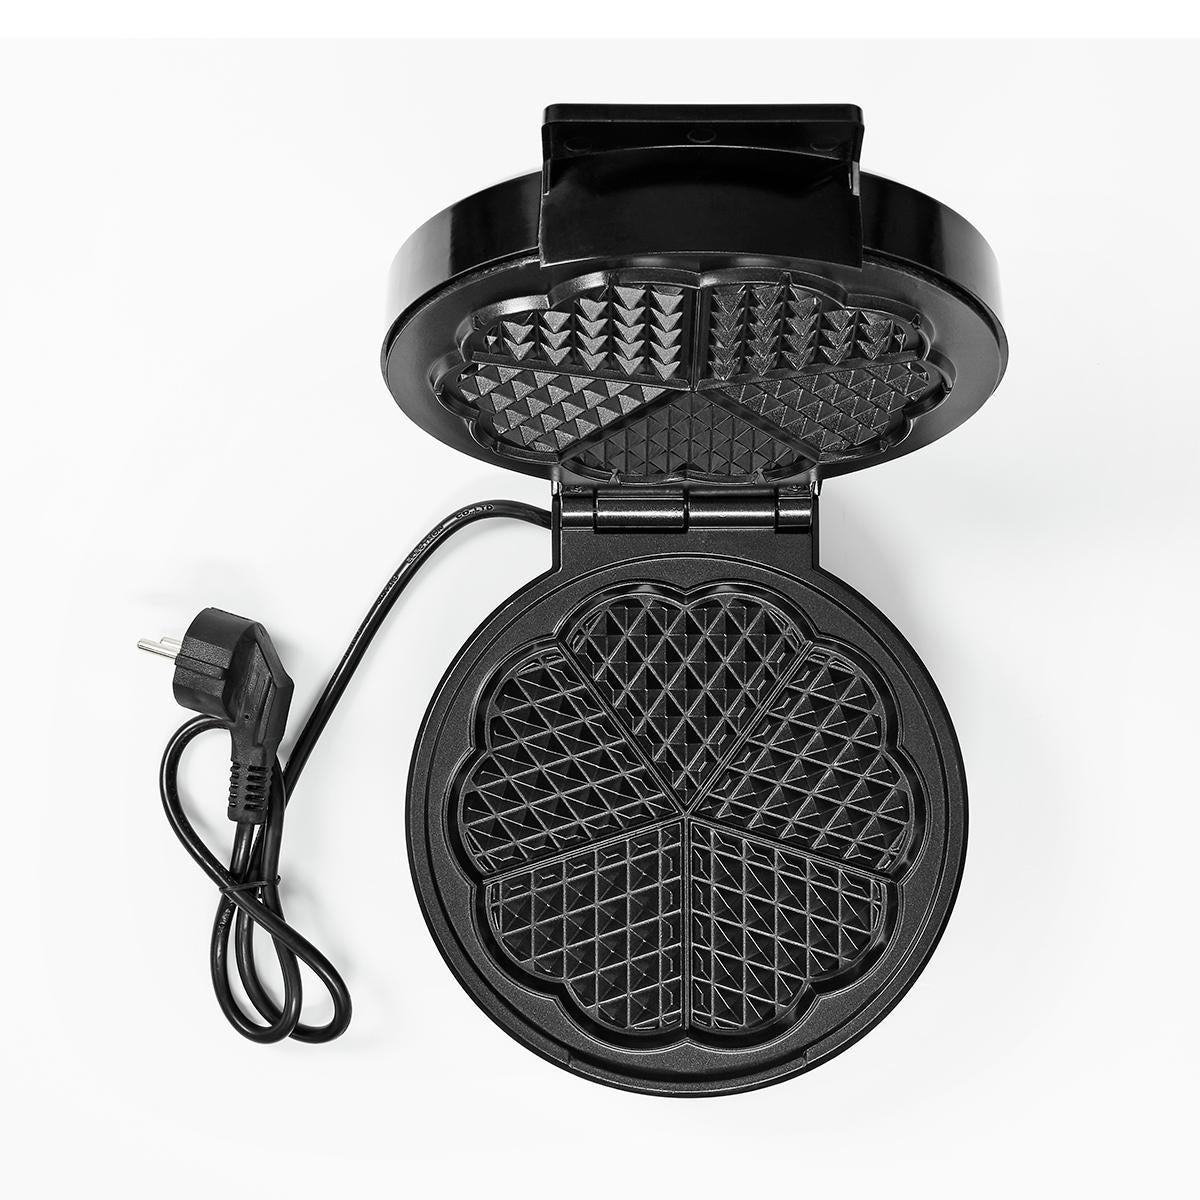 Waffeleisen | 5 Heart shaped waffles | 19 cm | 1000 W | Automatischer Temperaturkontrolle | Aluminium / Kunststoff